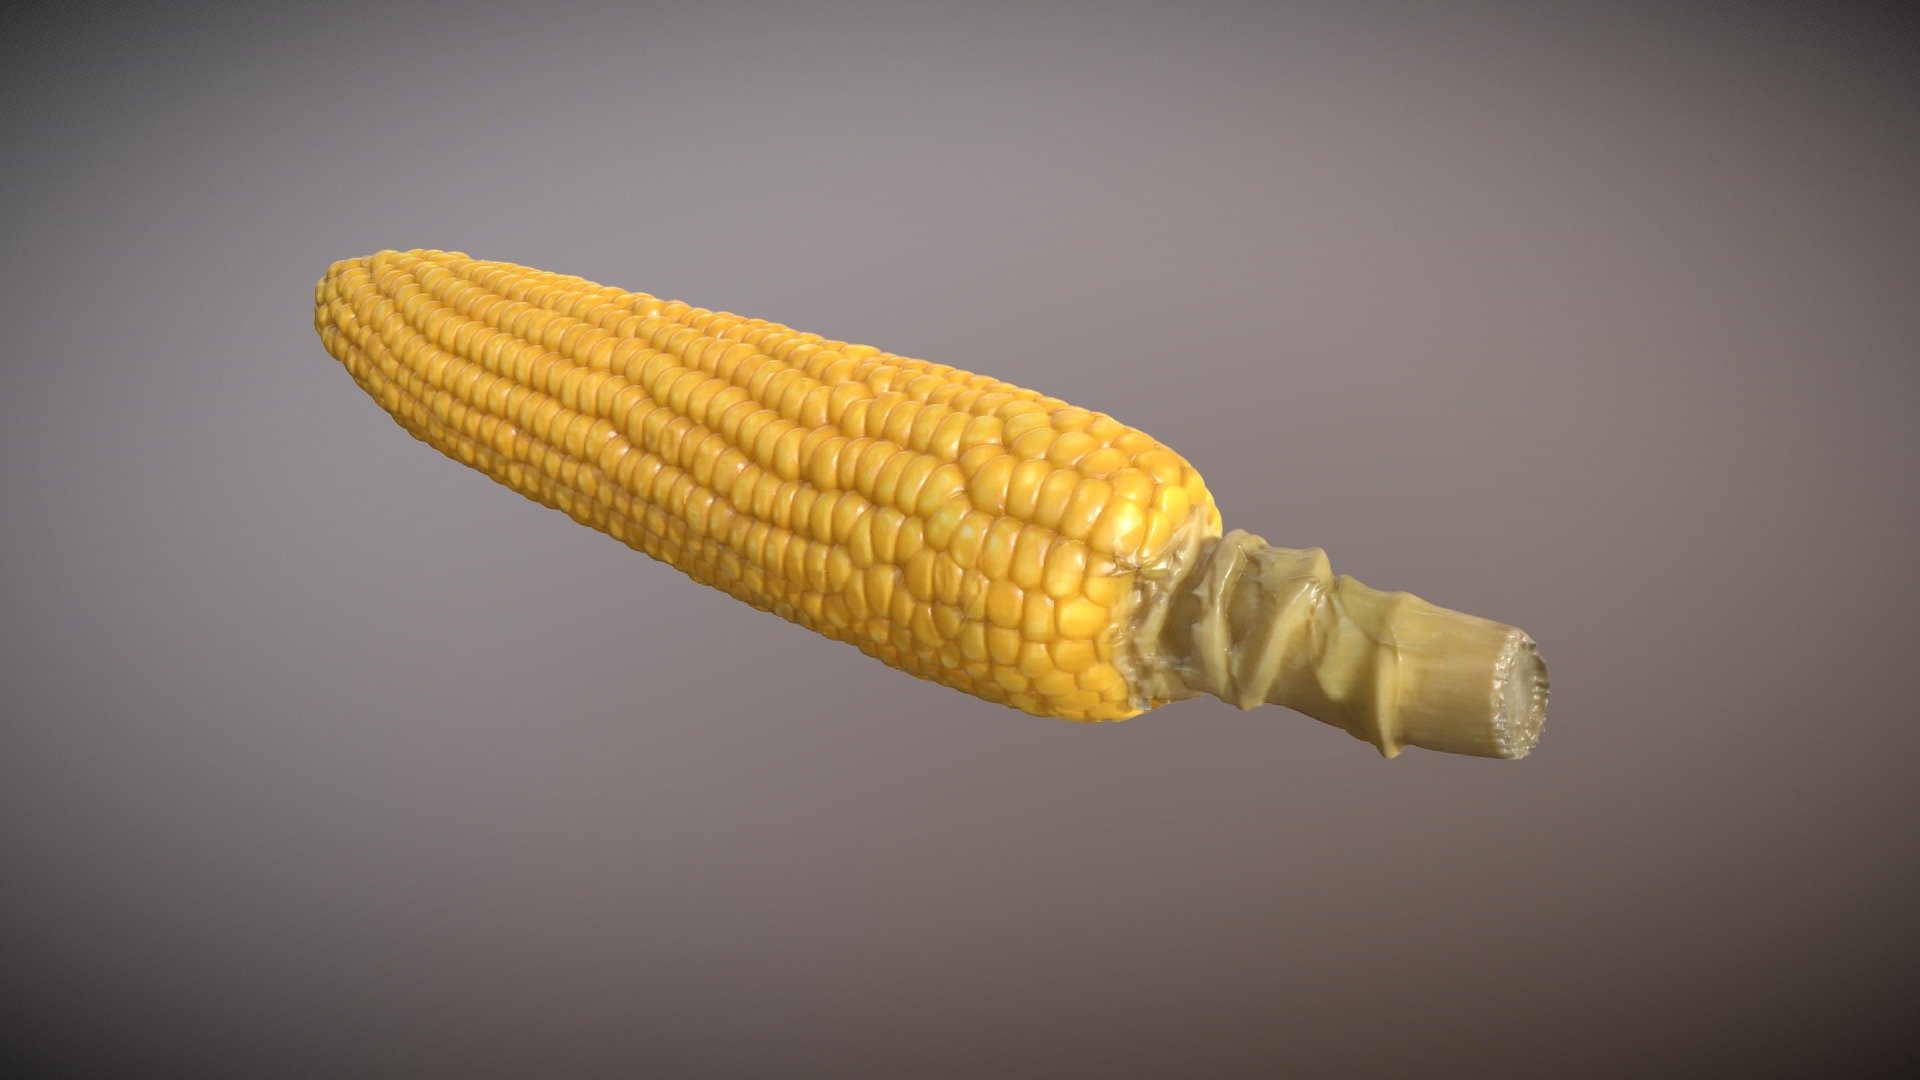 Corn 3Dscan RAW model

トウモロコシ3dスキャン - Corn 3Dscan - 3D model by cgslab 3d model